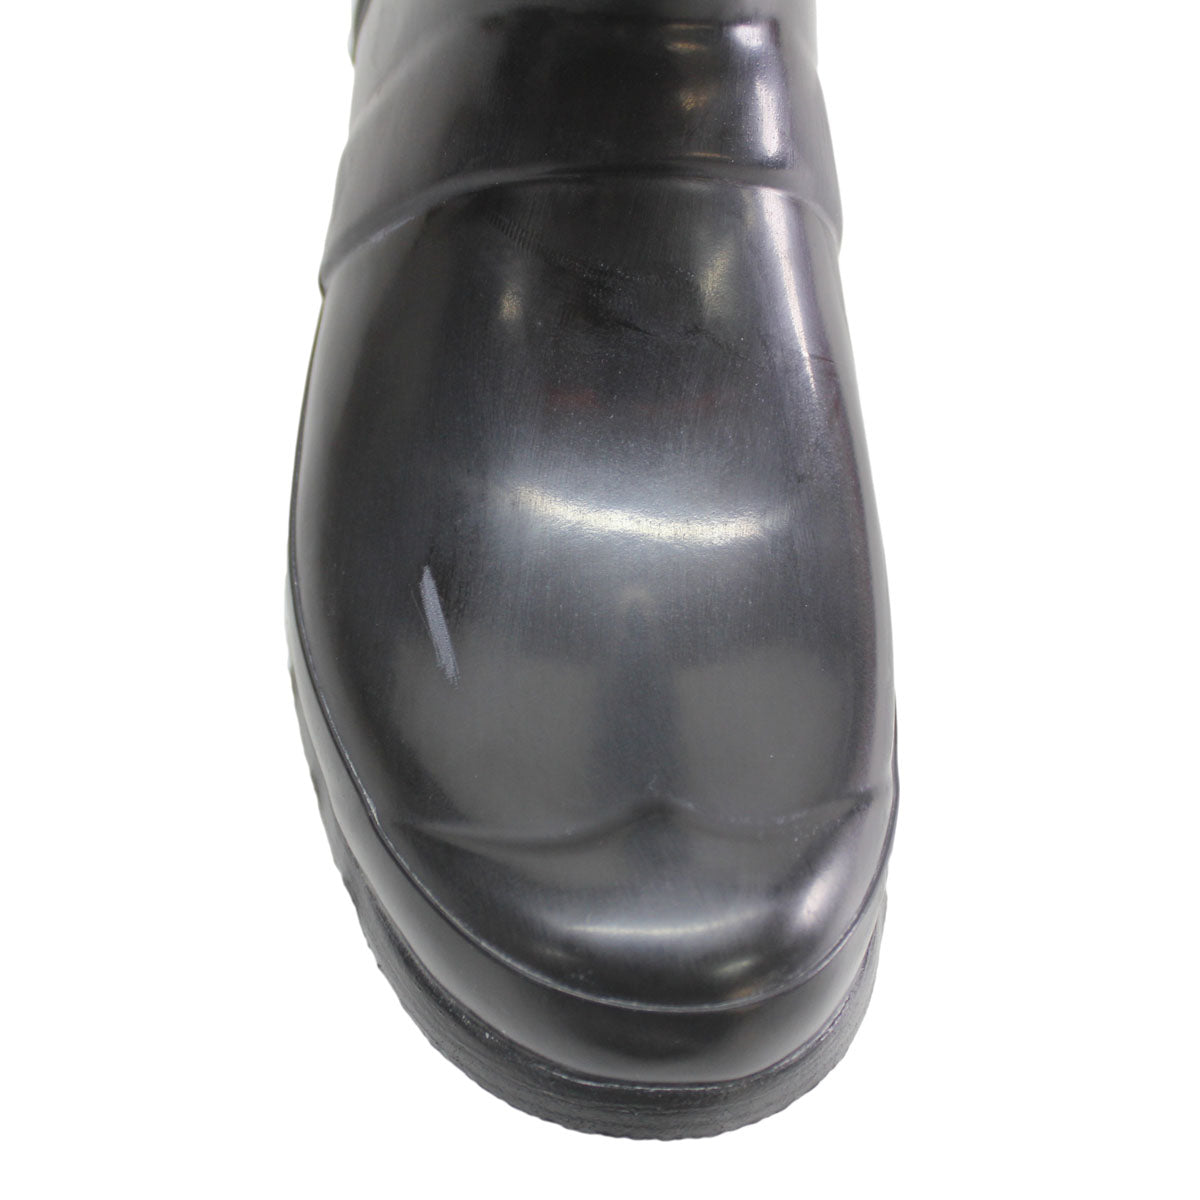 Hunter Womens Original Tall Gloss Rubber Boots - UK 6